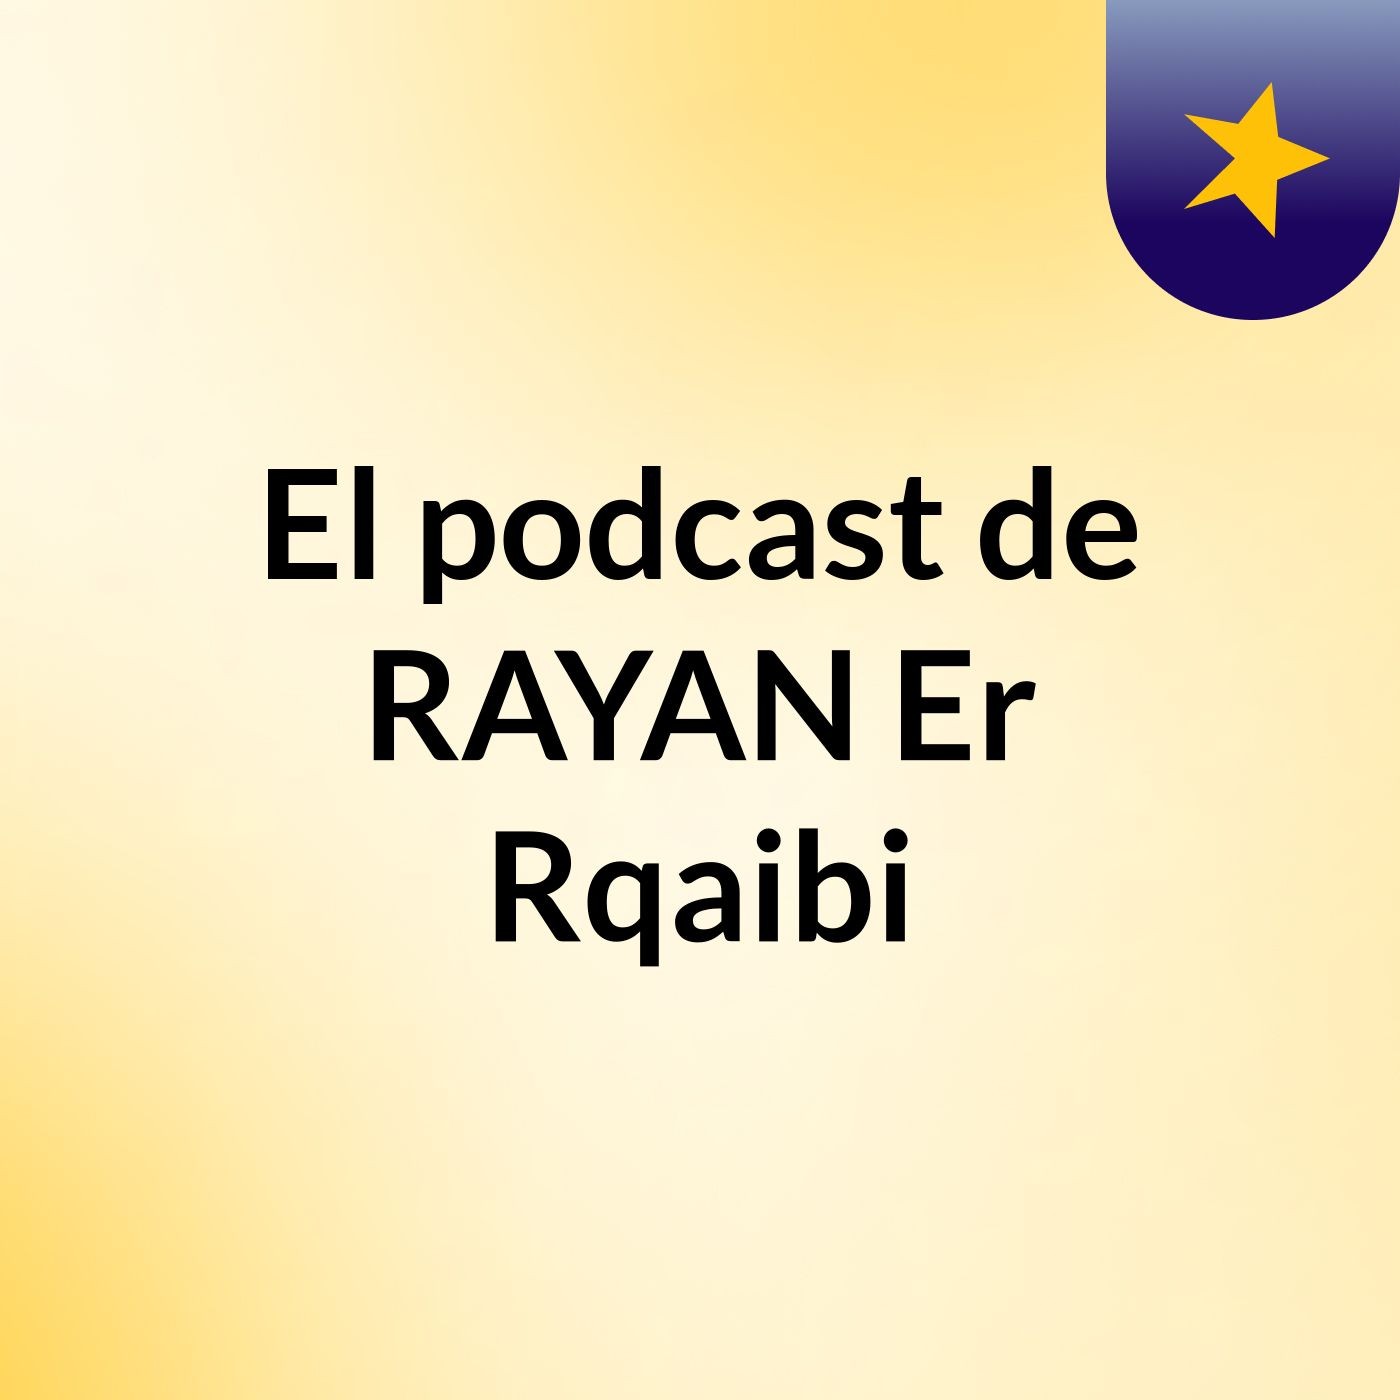 Episodio 7 - El podcast de RAYAN Er Rqaibi